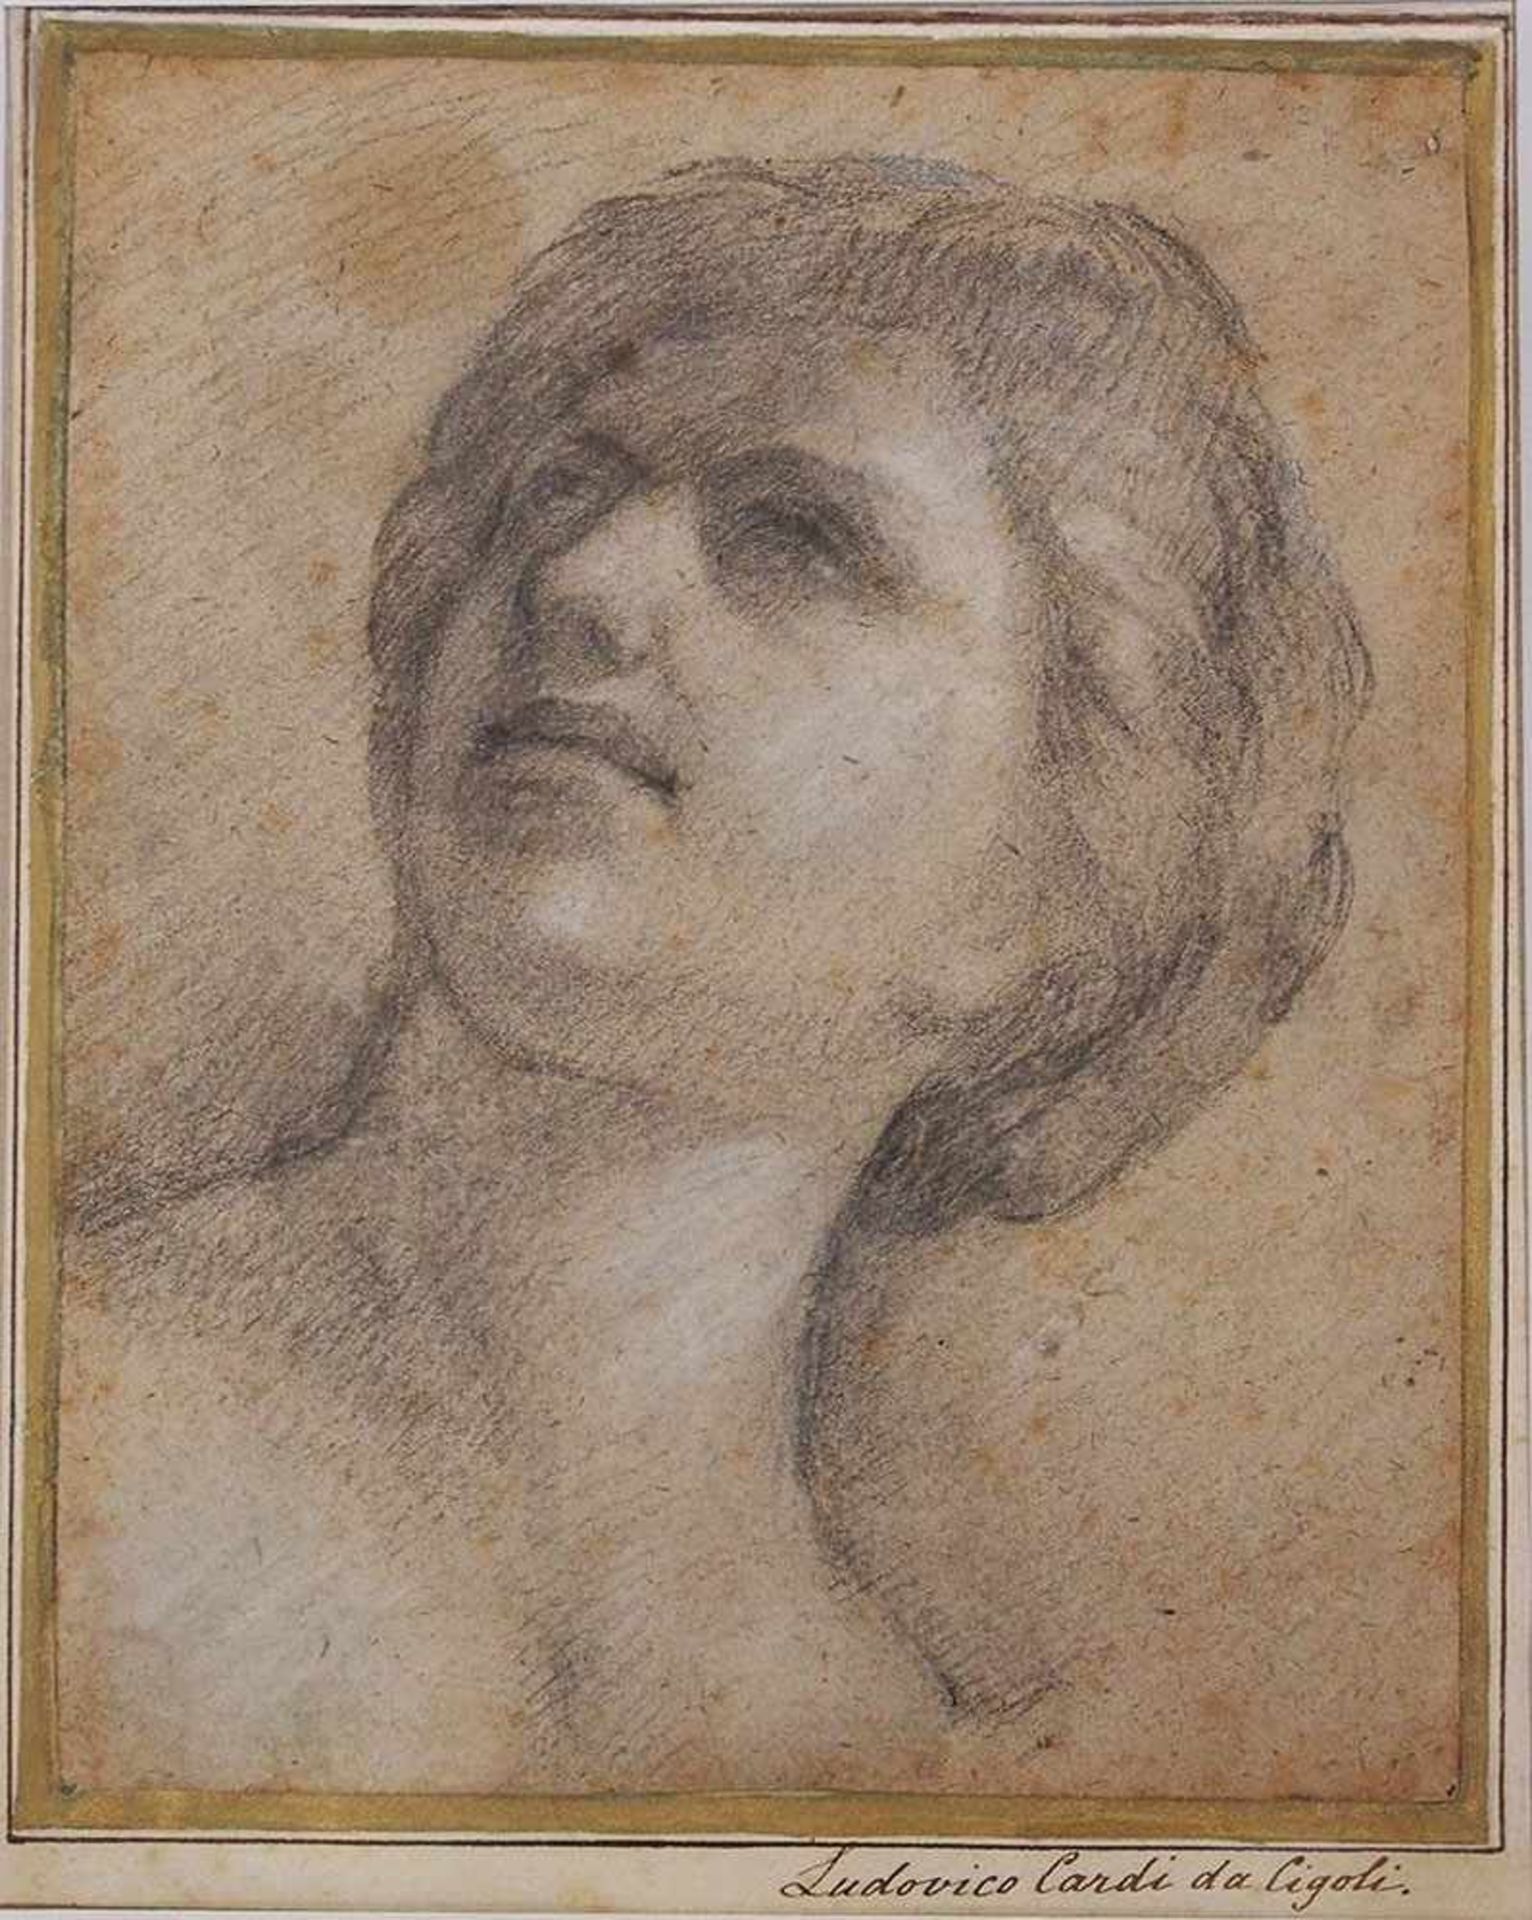 ITALIENISCHER MEISTERum 1610Kopf einer jungen FrauKreide, Deckweiss auf Papier, auf